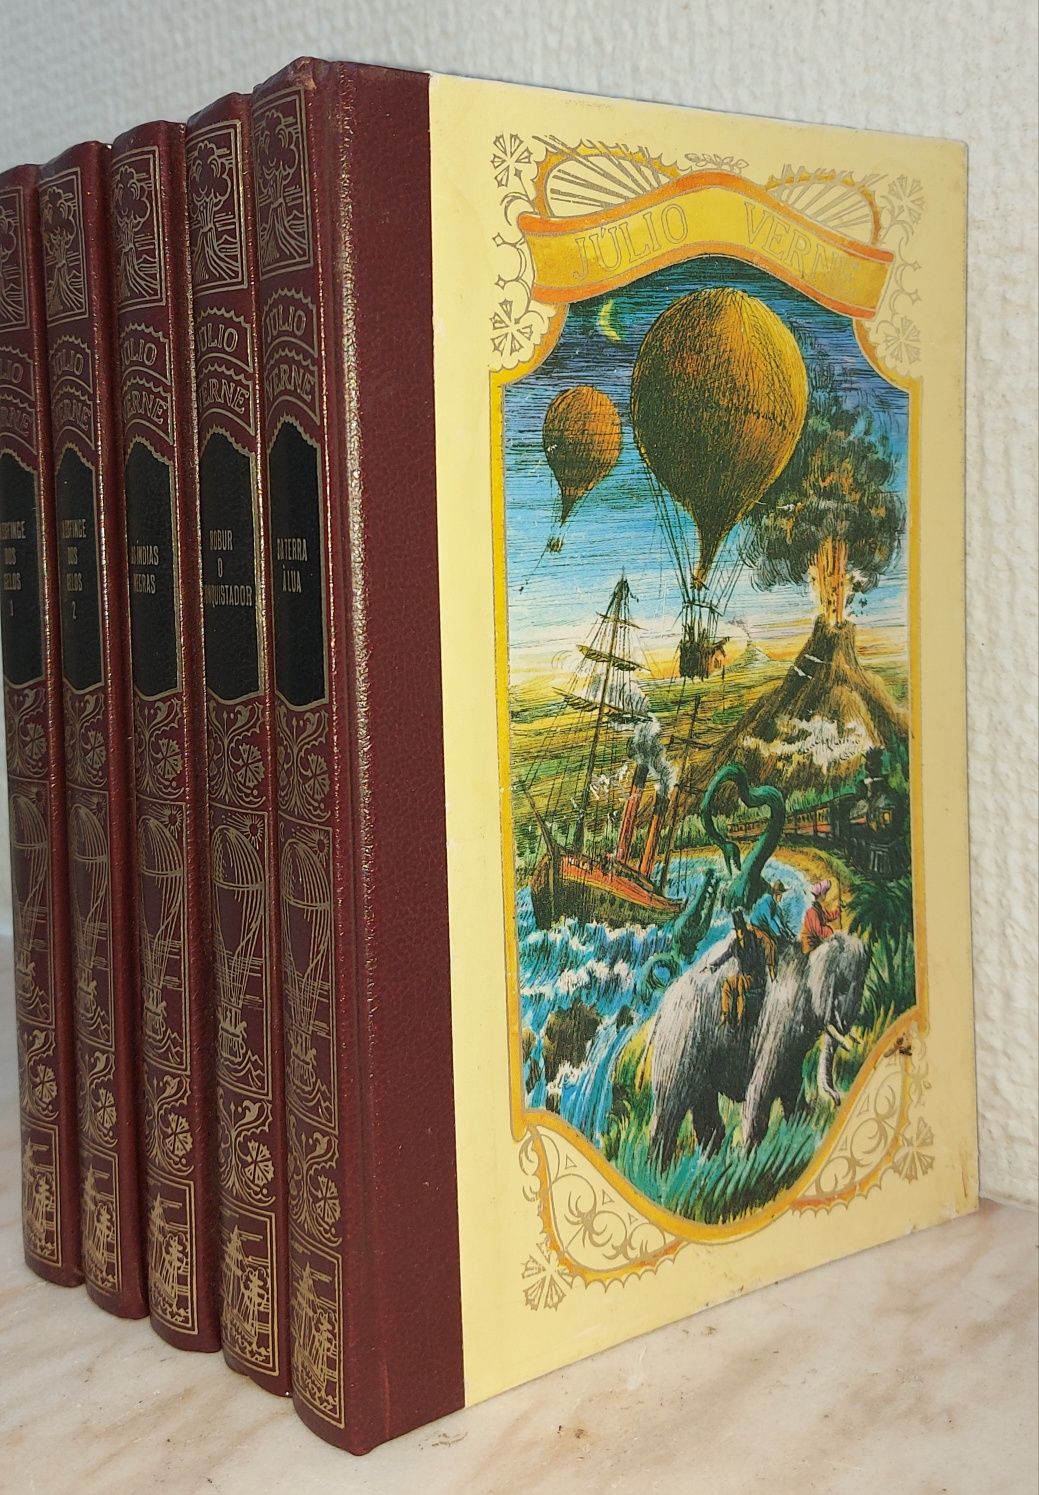 Livros da coleção Júlio Verne